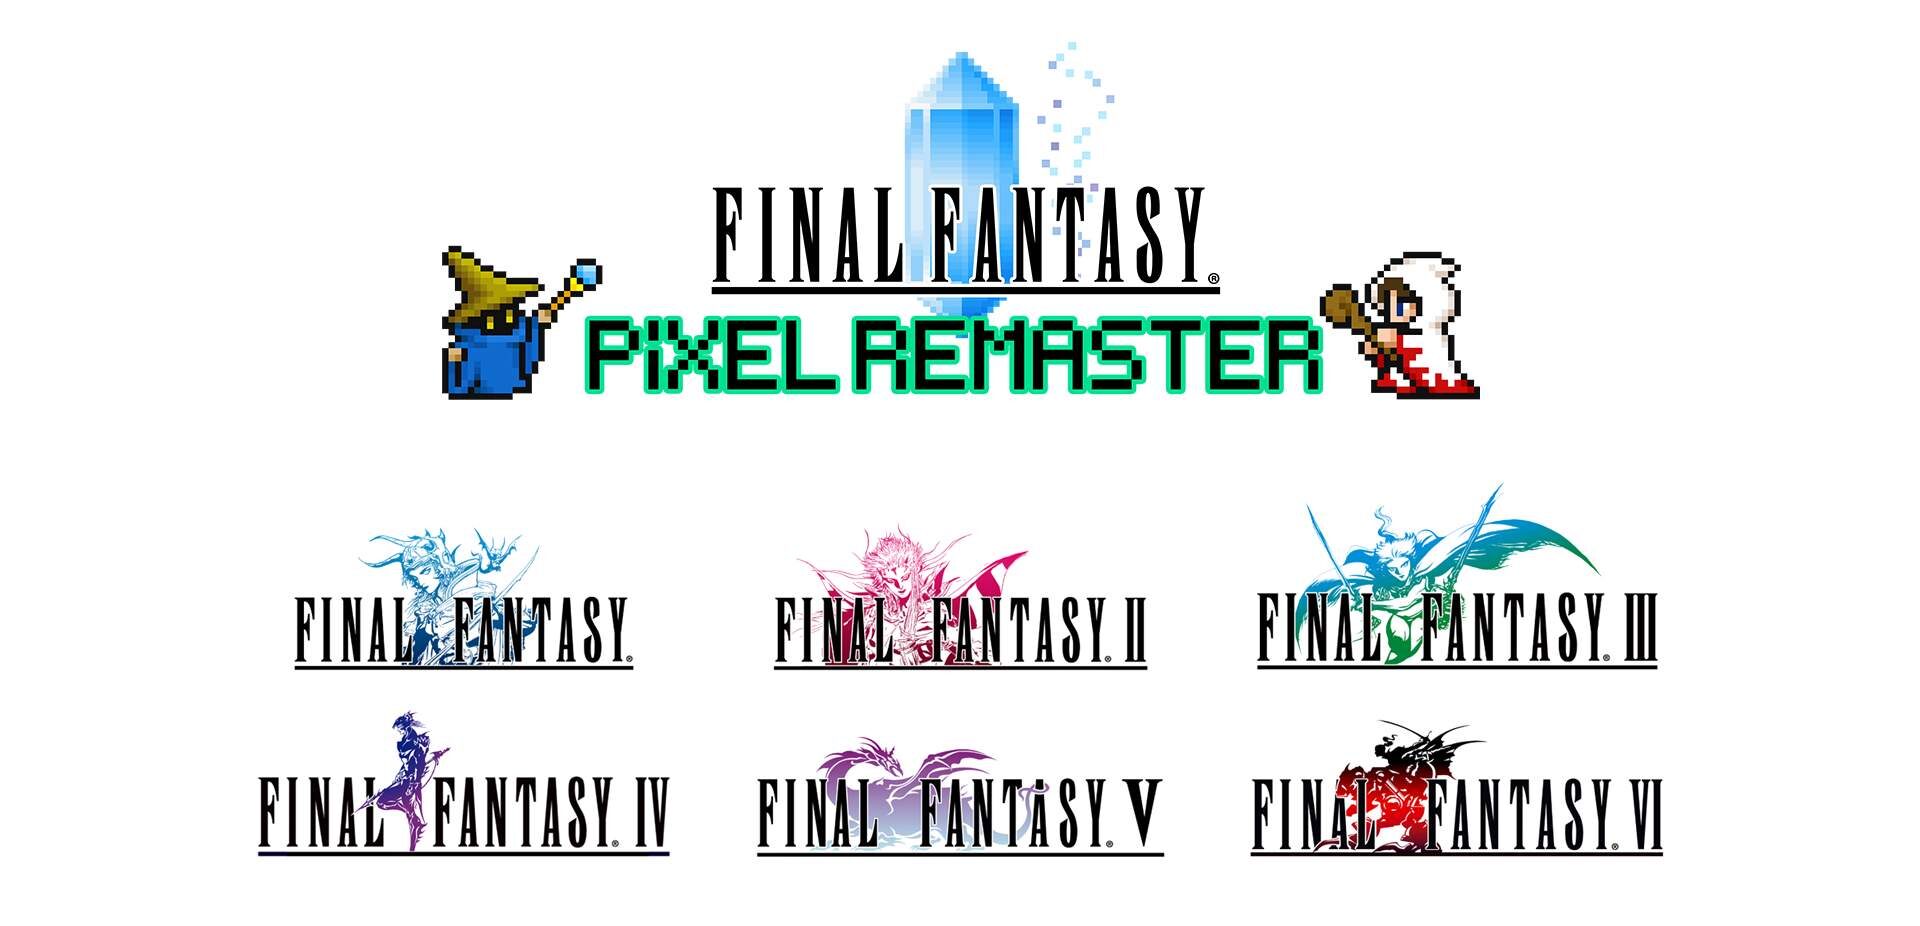 Domande frequenti sui Final Fantasy Pixel Remaster!